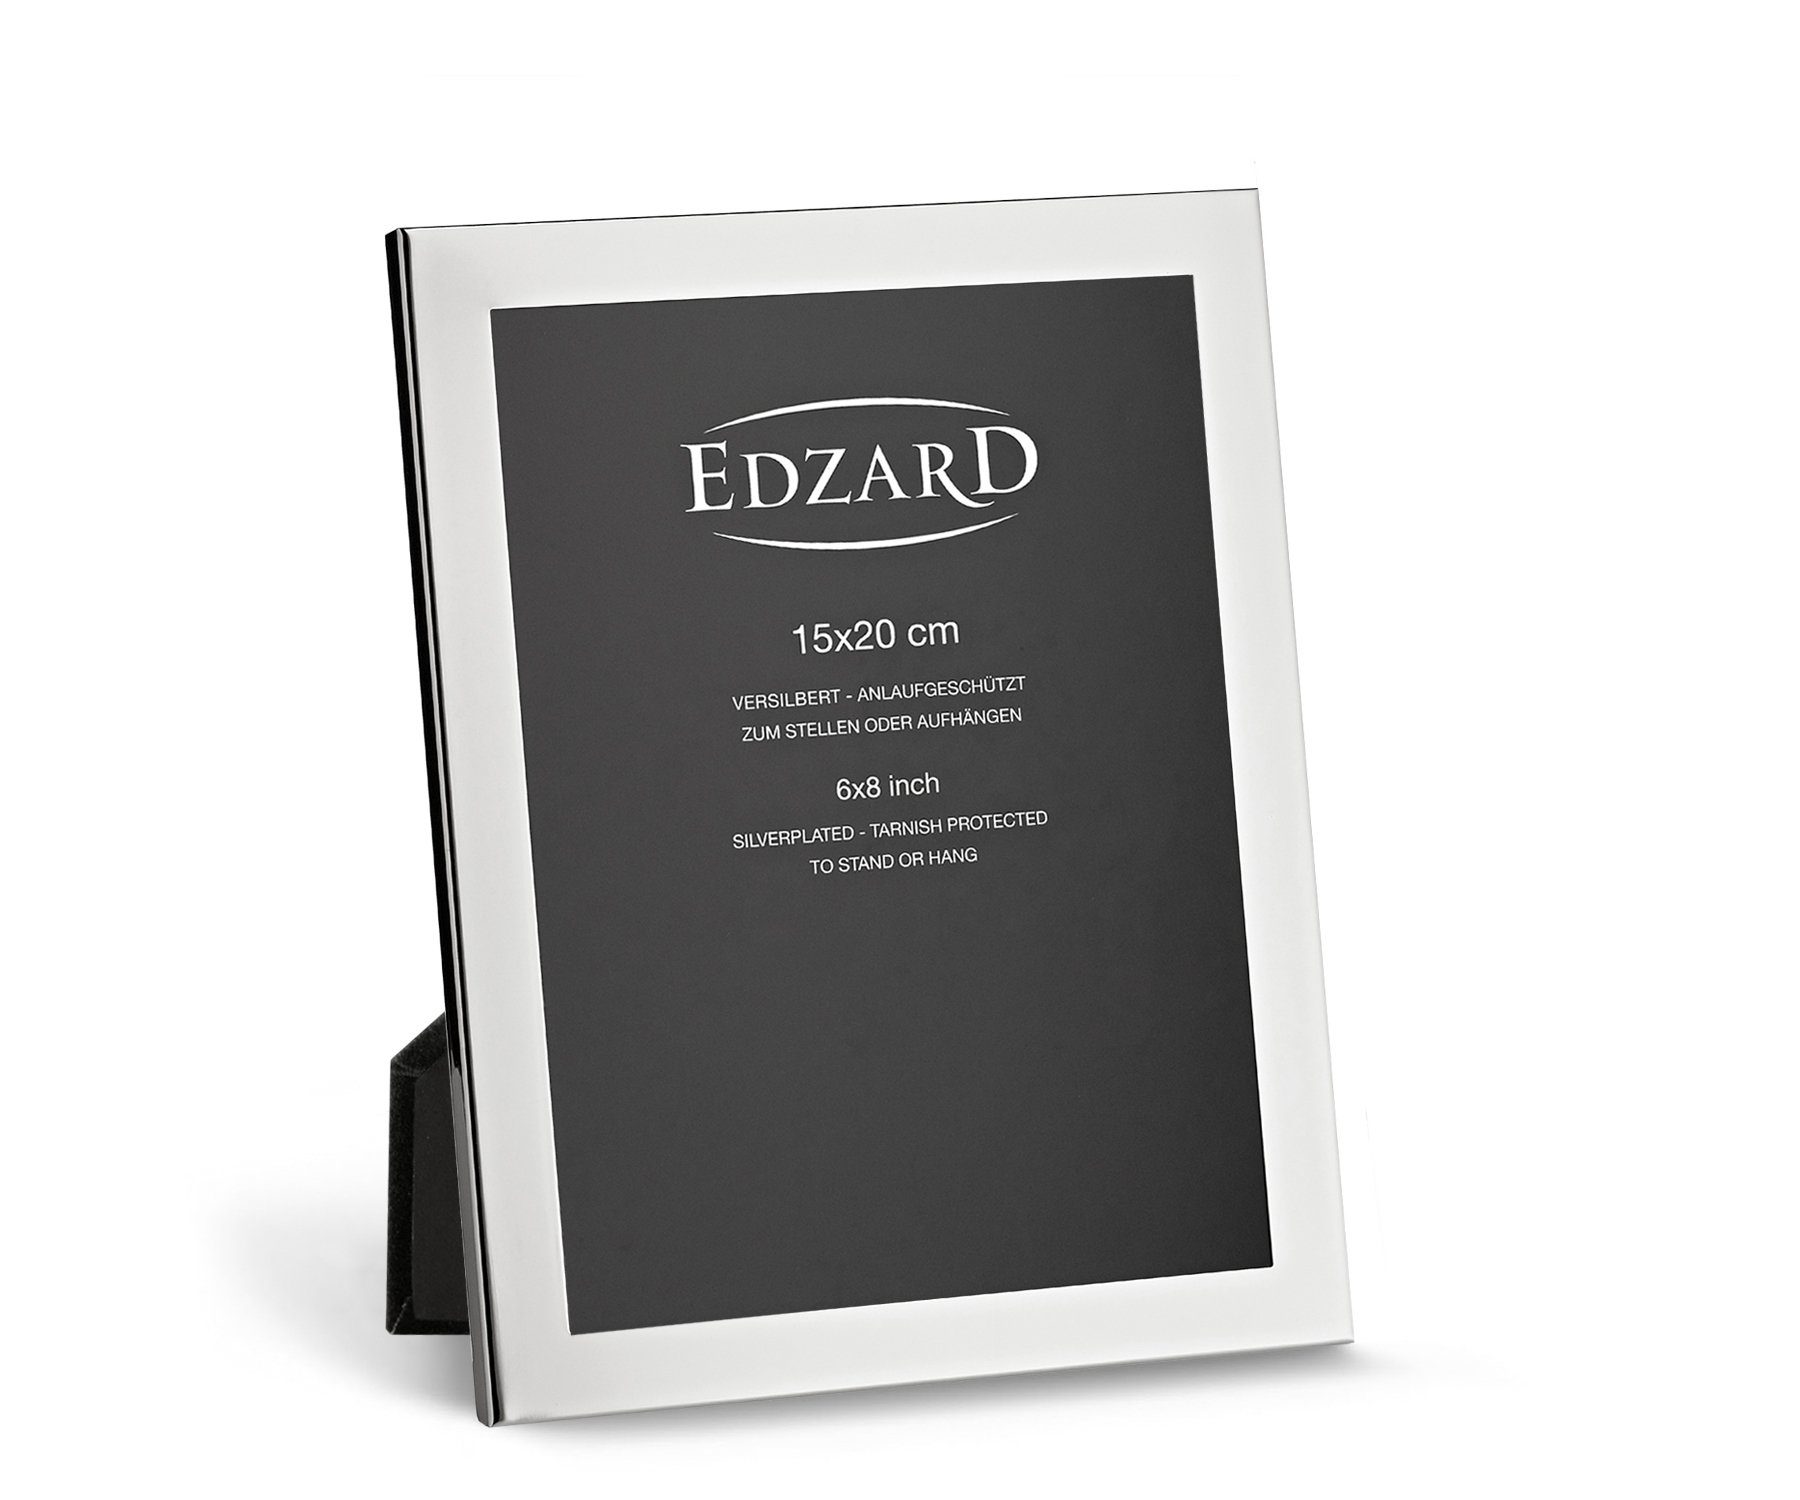 EDZARD Bilderrahmen Prato, versilbert und anlaufgeschützt, für 15x20 cm Bilder – Fotorahmen